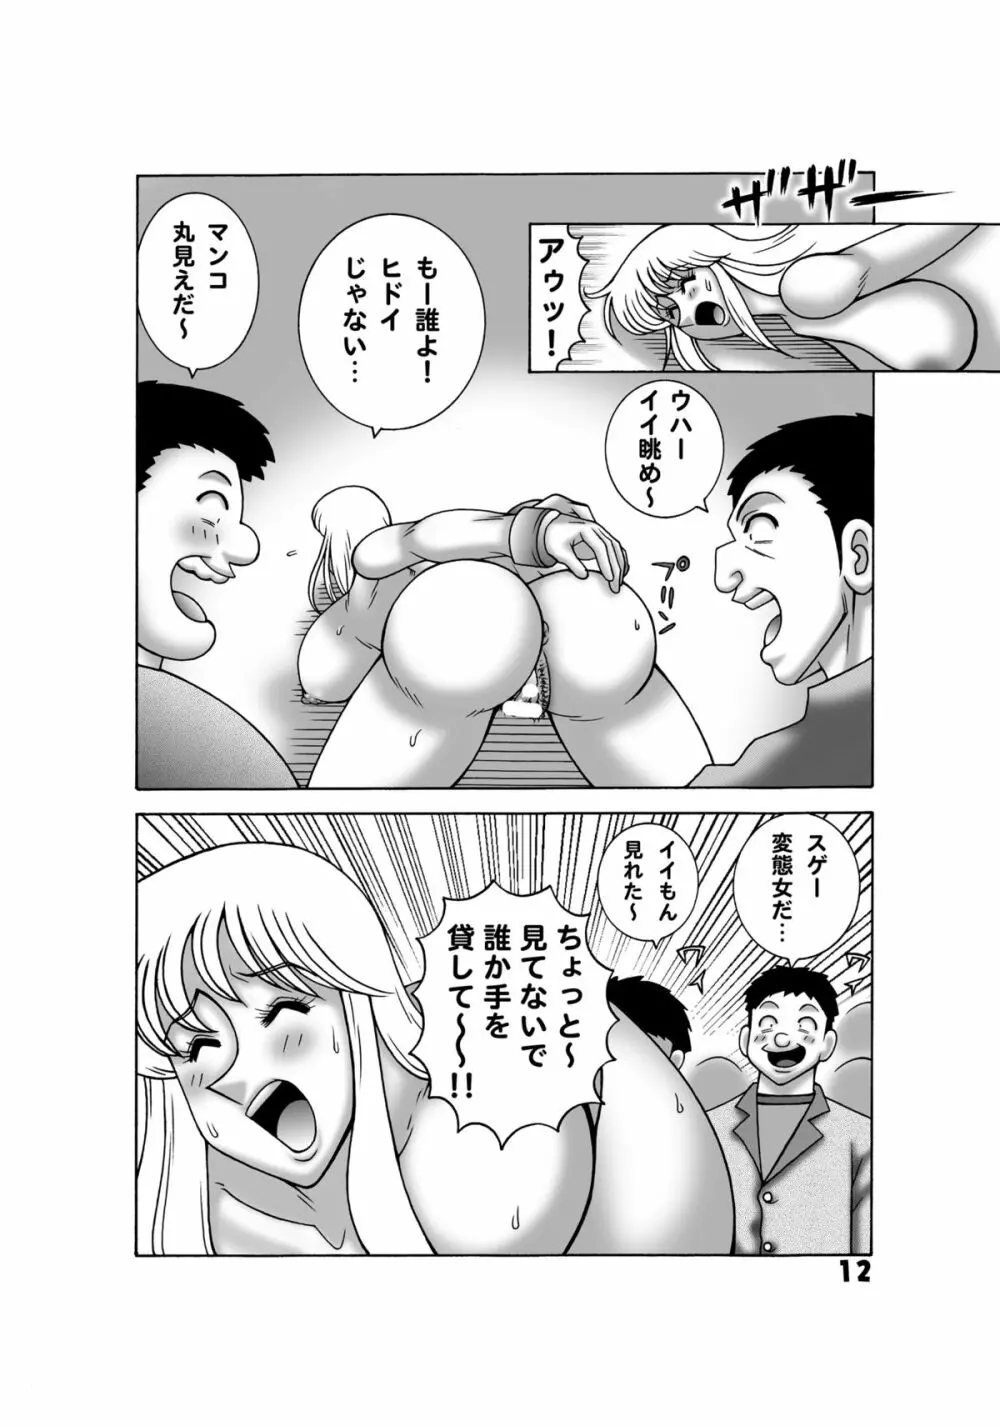 こち亀ダイナマイト 14 - page10